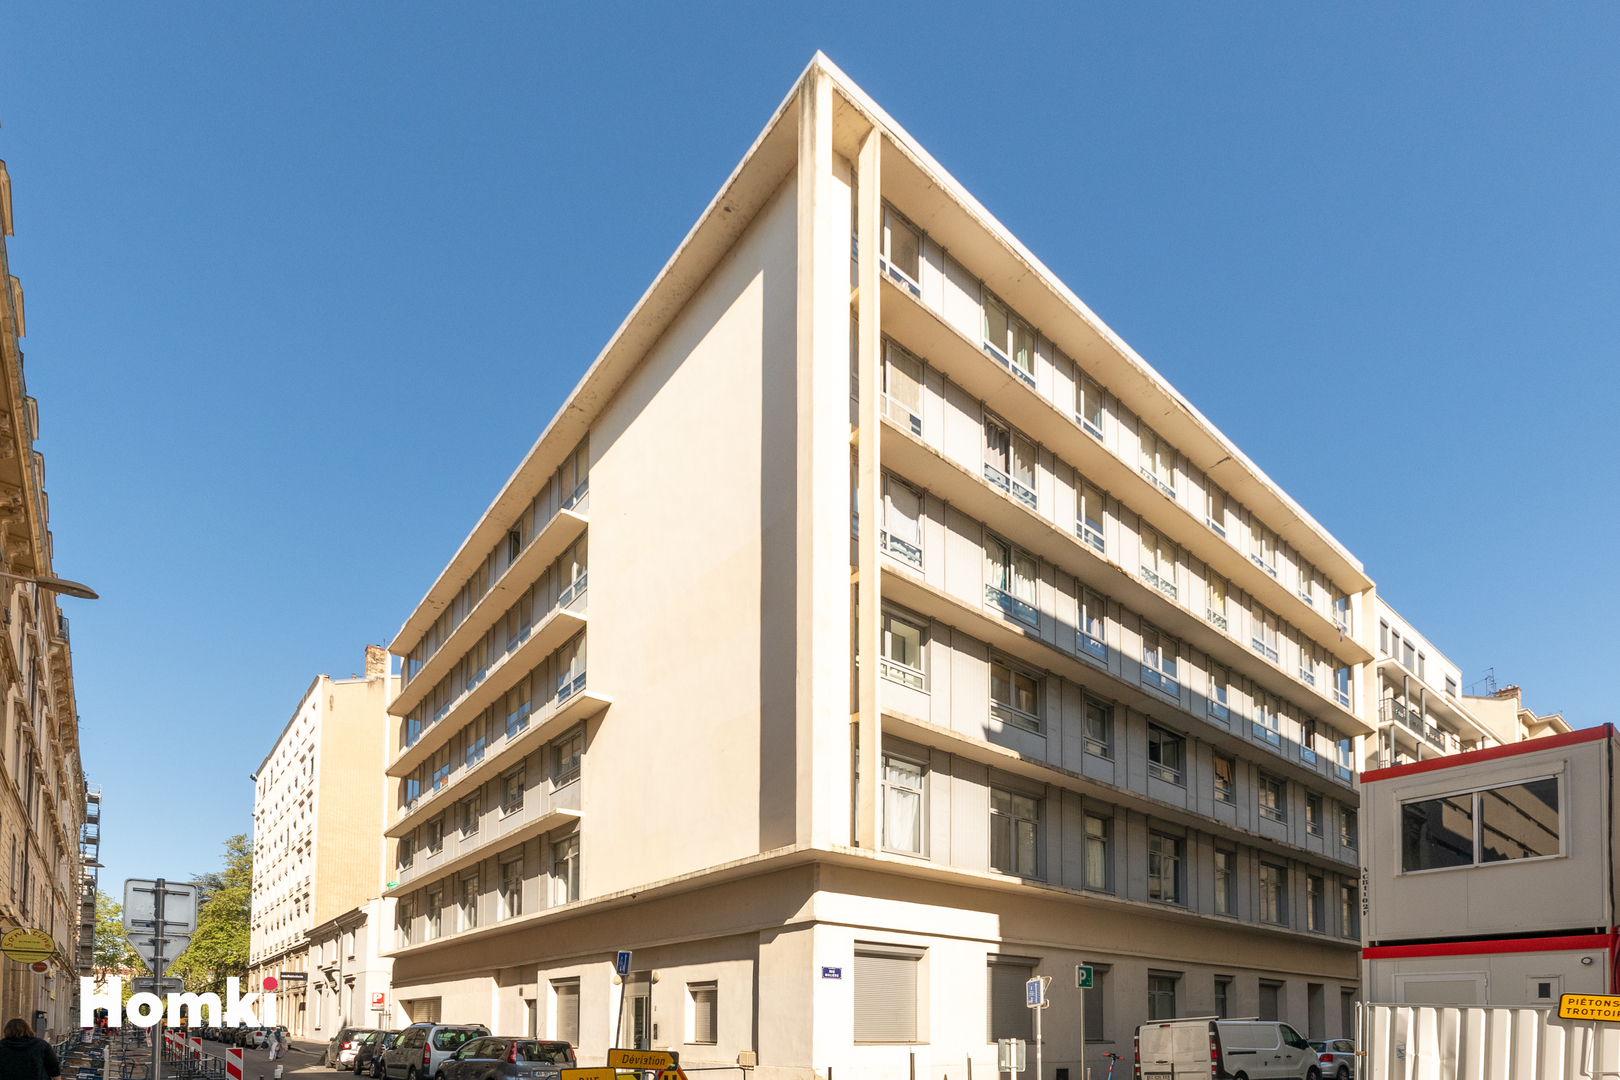 Homki - Vente Appartement  de 20.0 m² à Lyon 69003